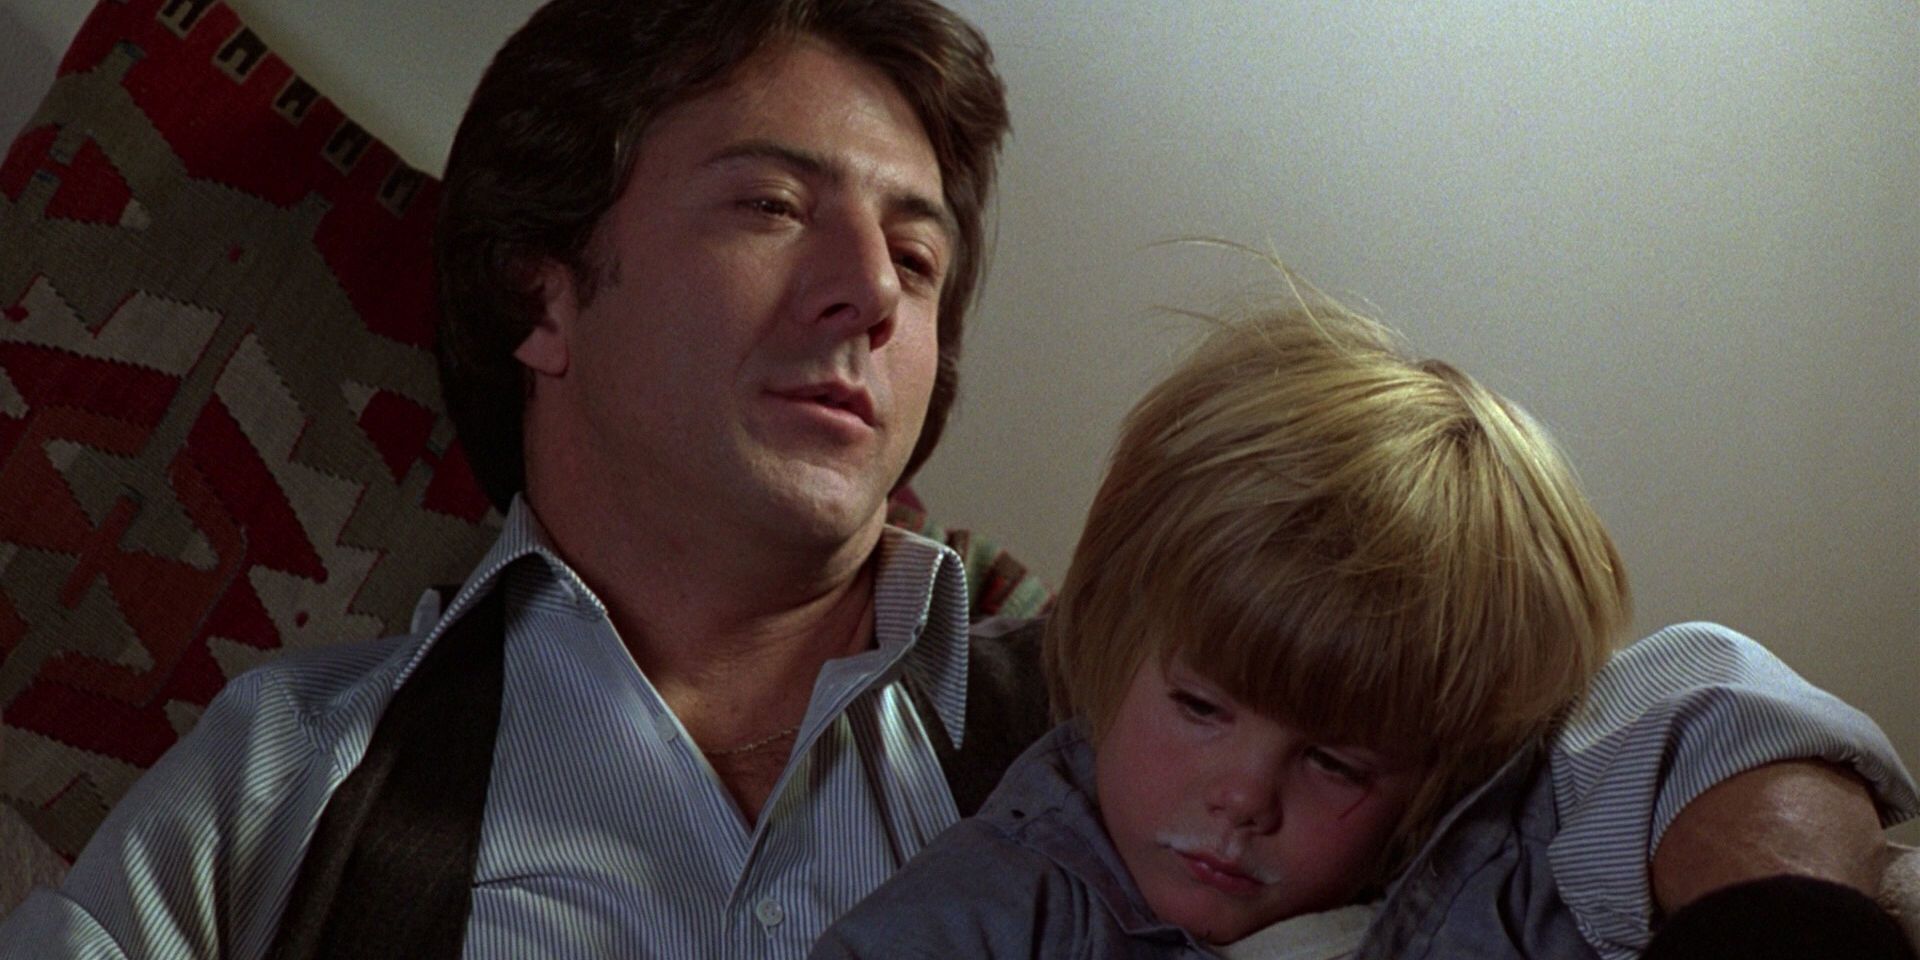 Dustin Hoffman looks tired as he holds his young son in Kramer vs Kramer